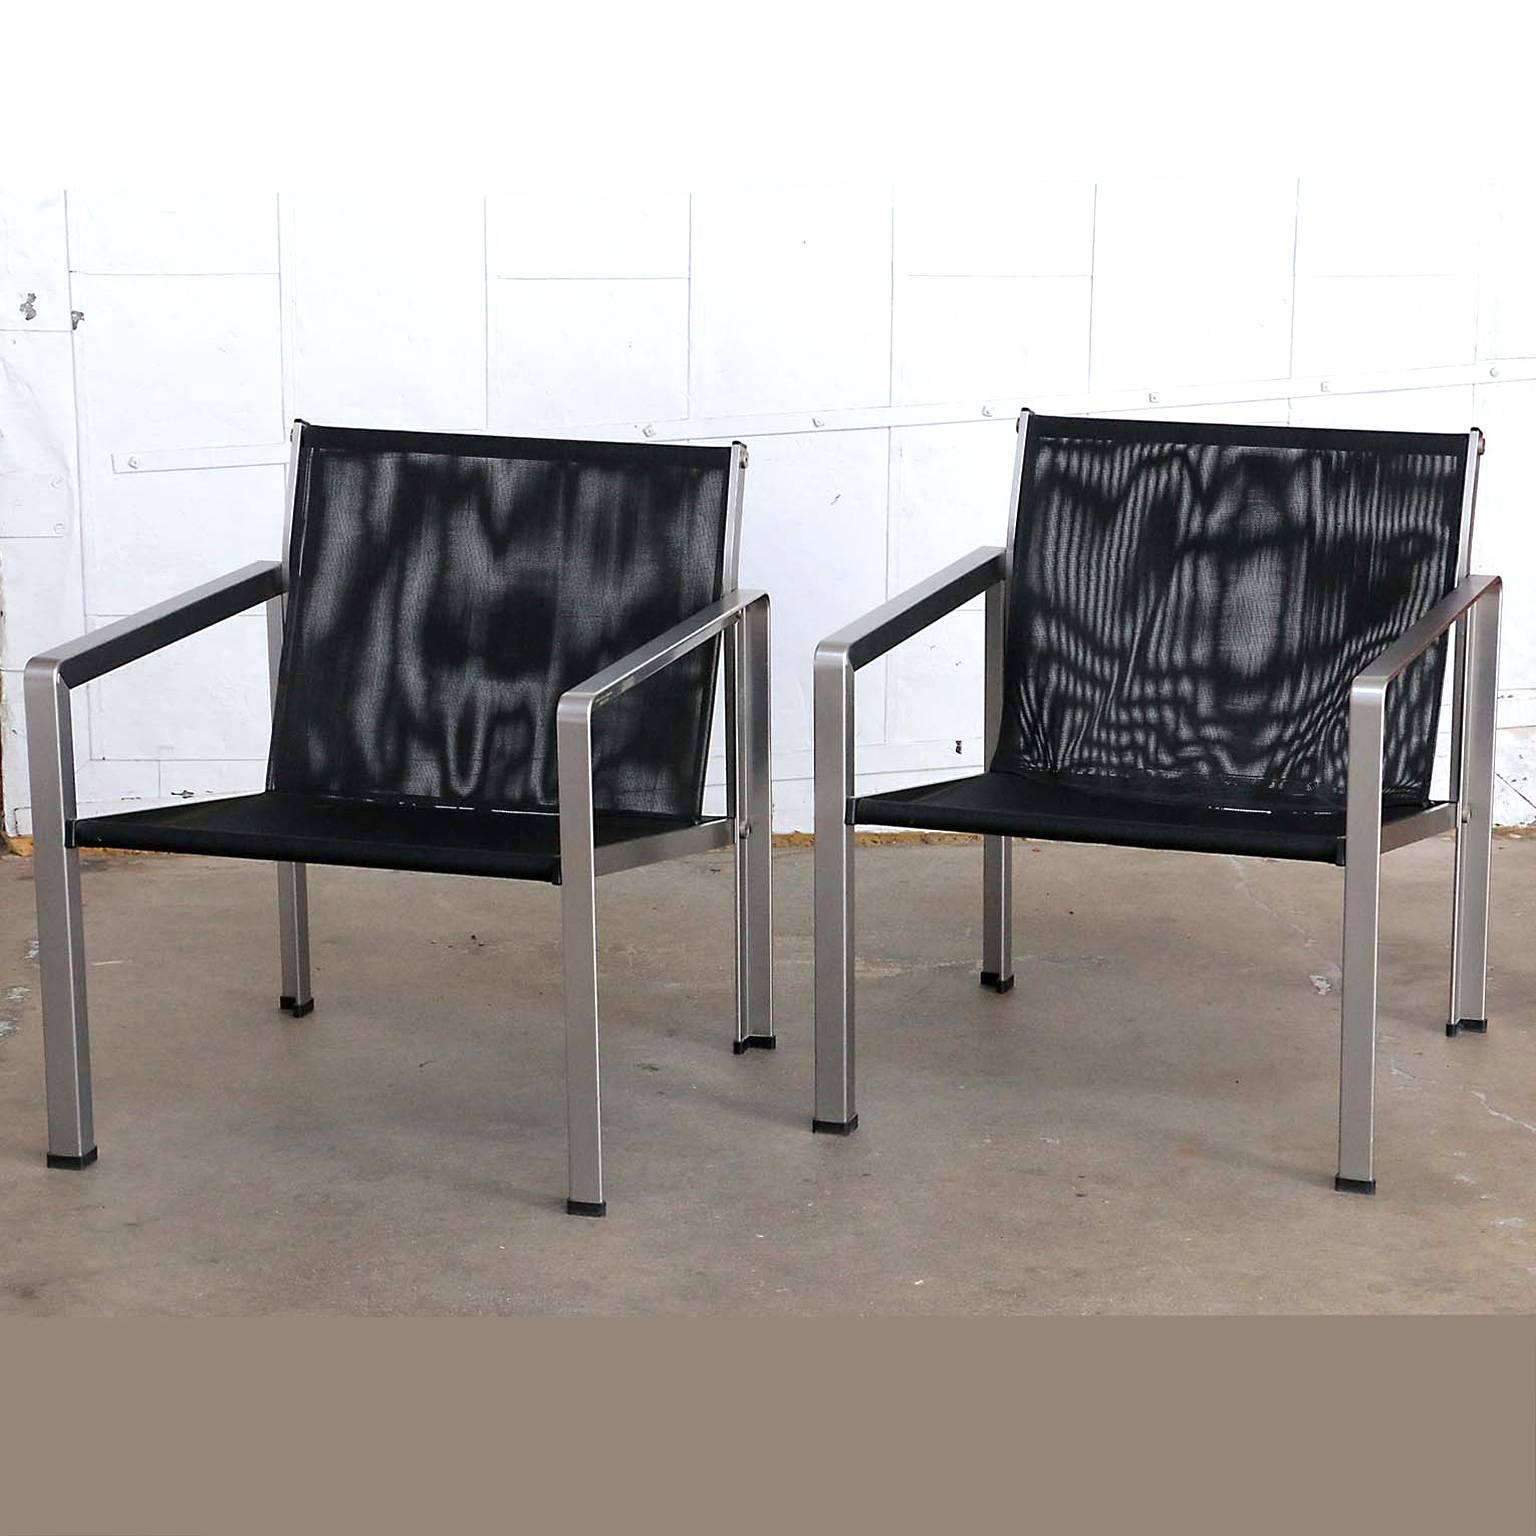 Seltenes Paar von Giuseppe Raimondi Design Aluminium modernistischen Lounge oder Würfel Stühle in Italien gemacht. Sie bestehen aus flachen Aluminiumrahmen im Flugzeugstil mit gebürsteter Oberfläche. Gepolstert mit feinmaschigen Schlingen, die an